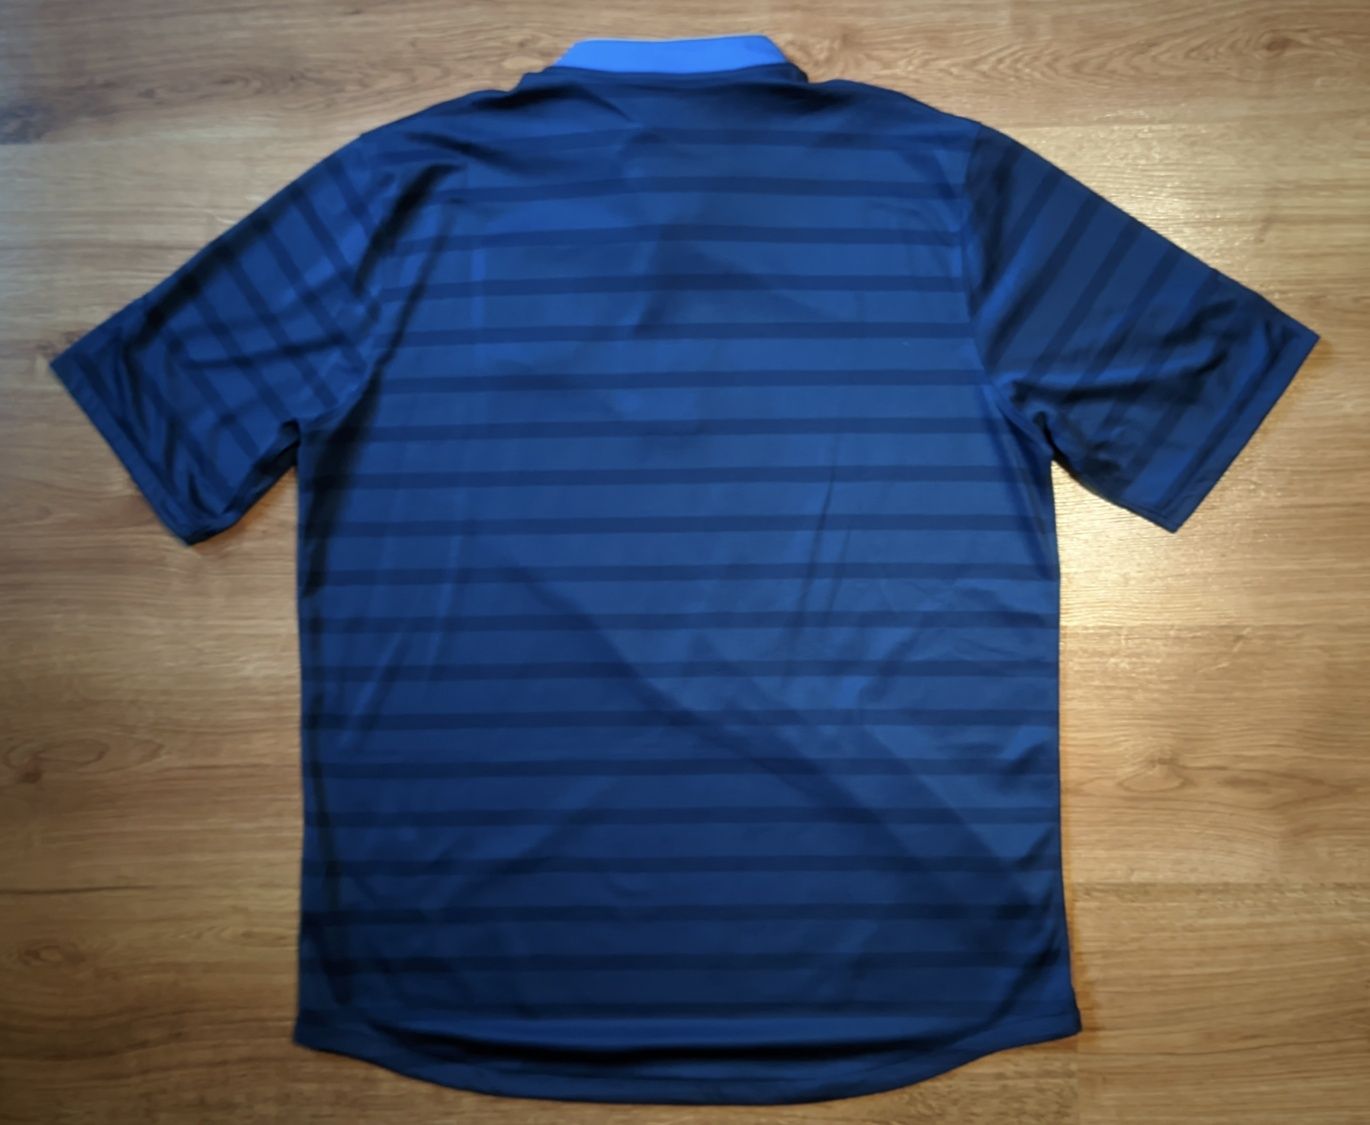 Oryginalna koszulka reprezentacji Francji (sezon 2012/13) Nike XL